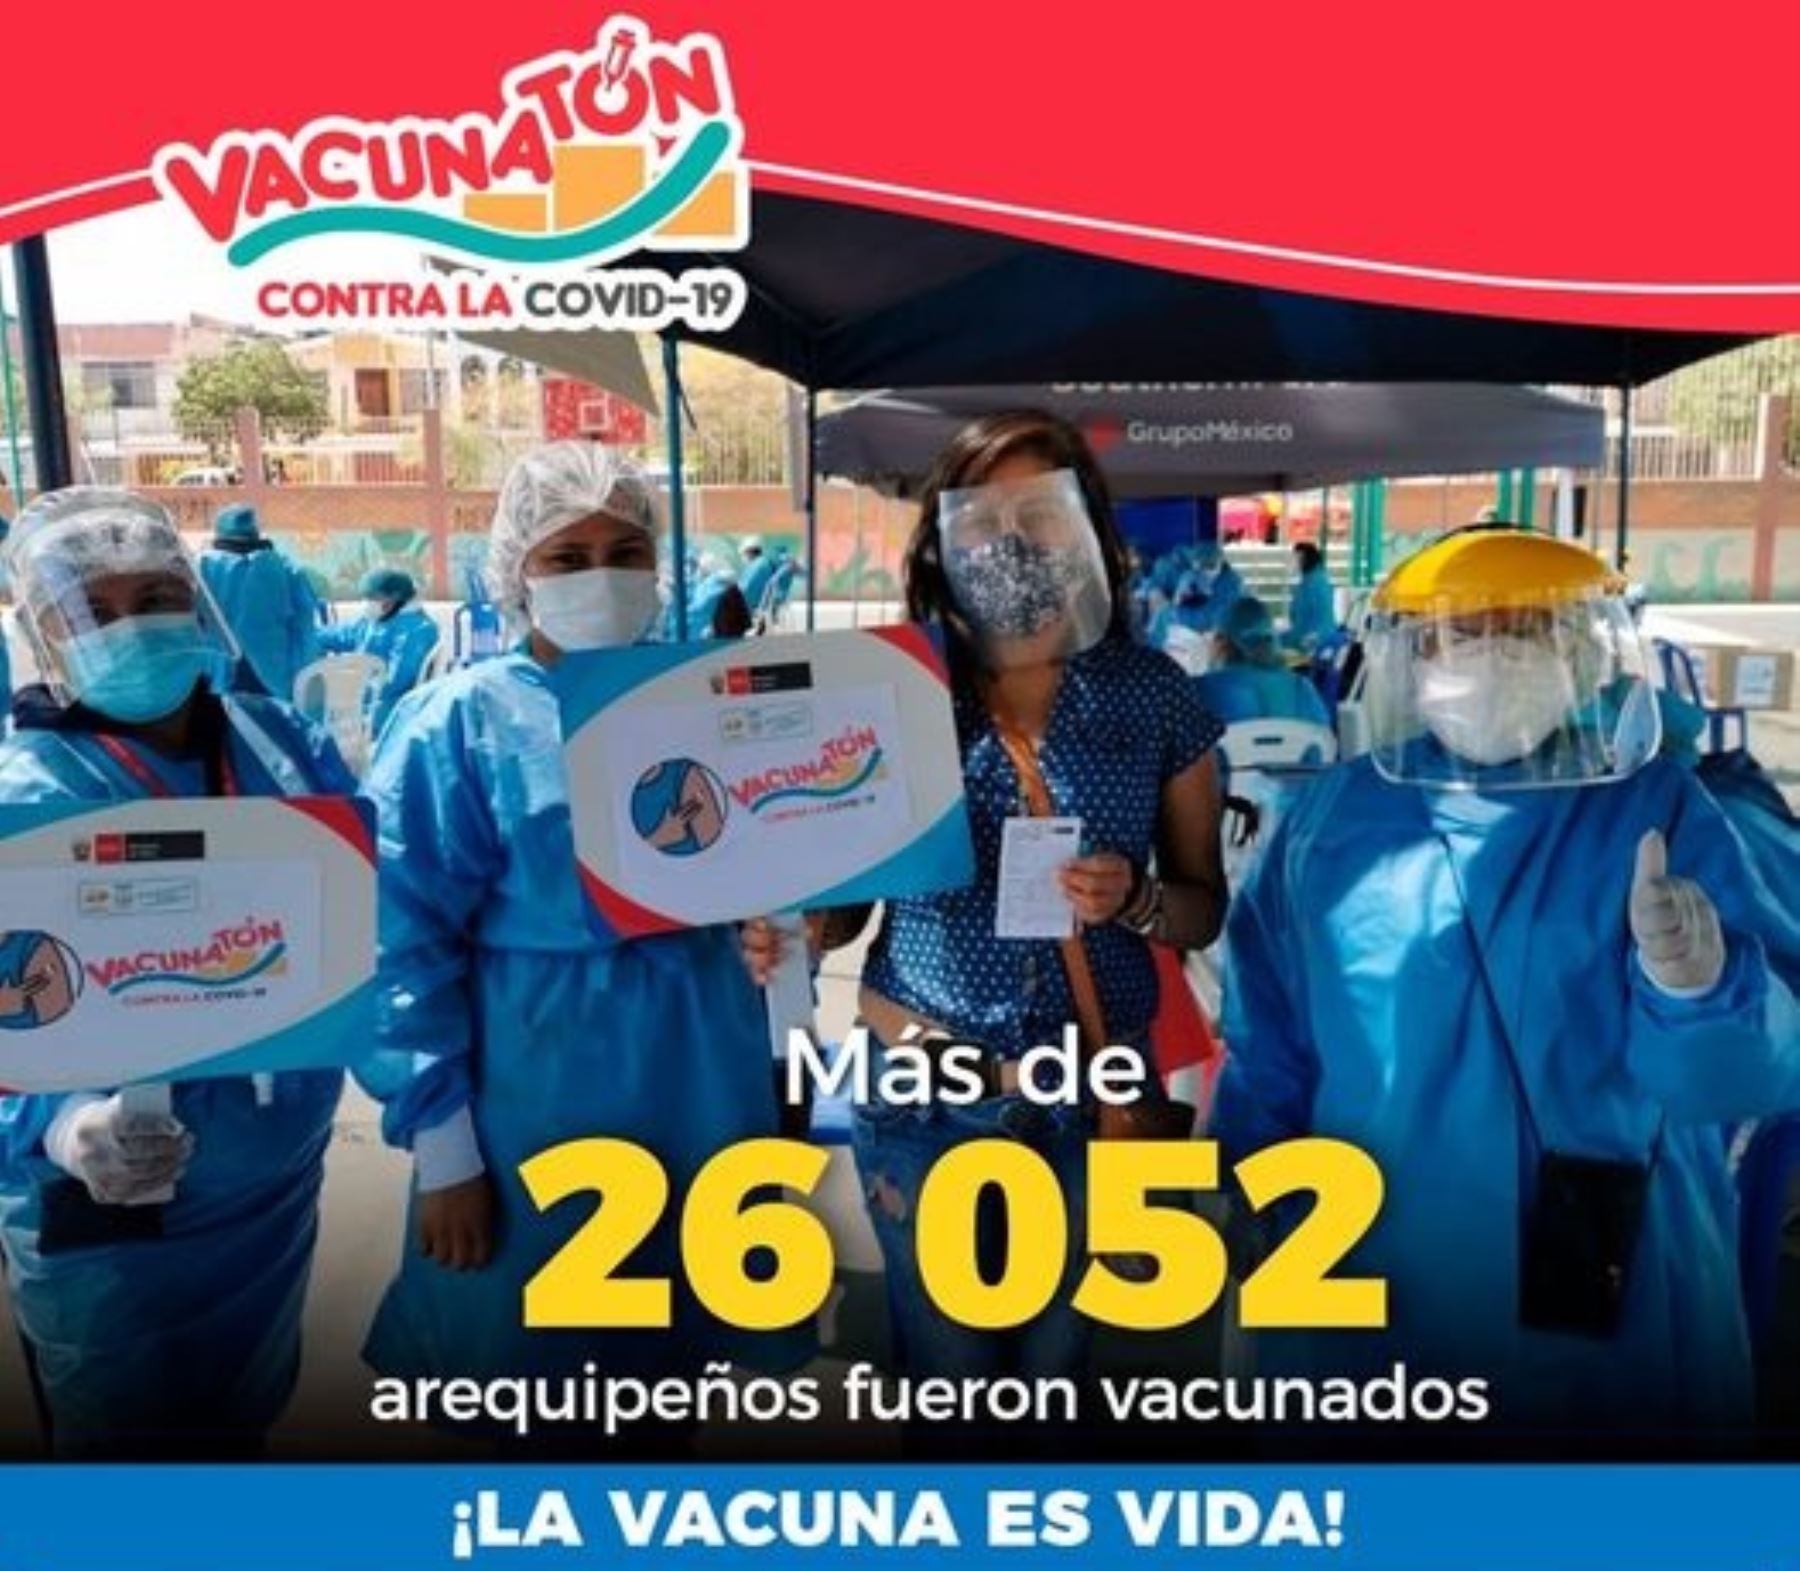 Más de 26,000 personas recibieron la primera dosis de la vacuna contra el covid-19 durante Vacunatón que se desarrolló en la región Arequipa el último fin de semana.